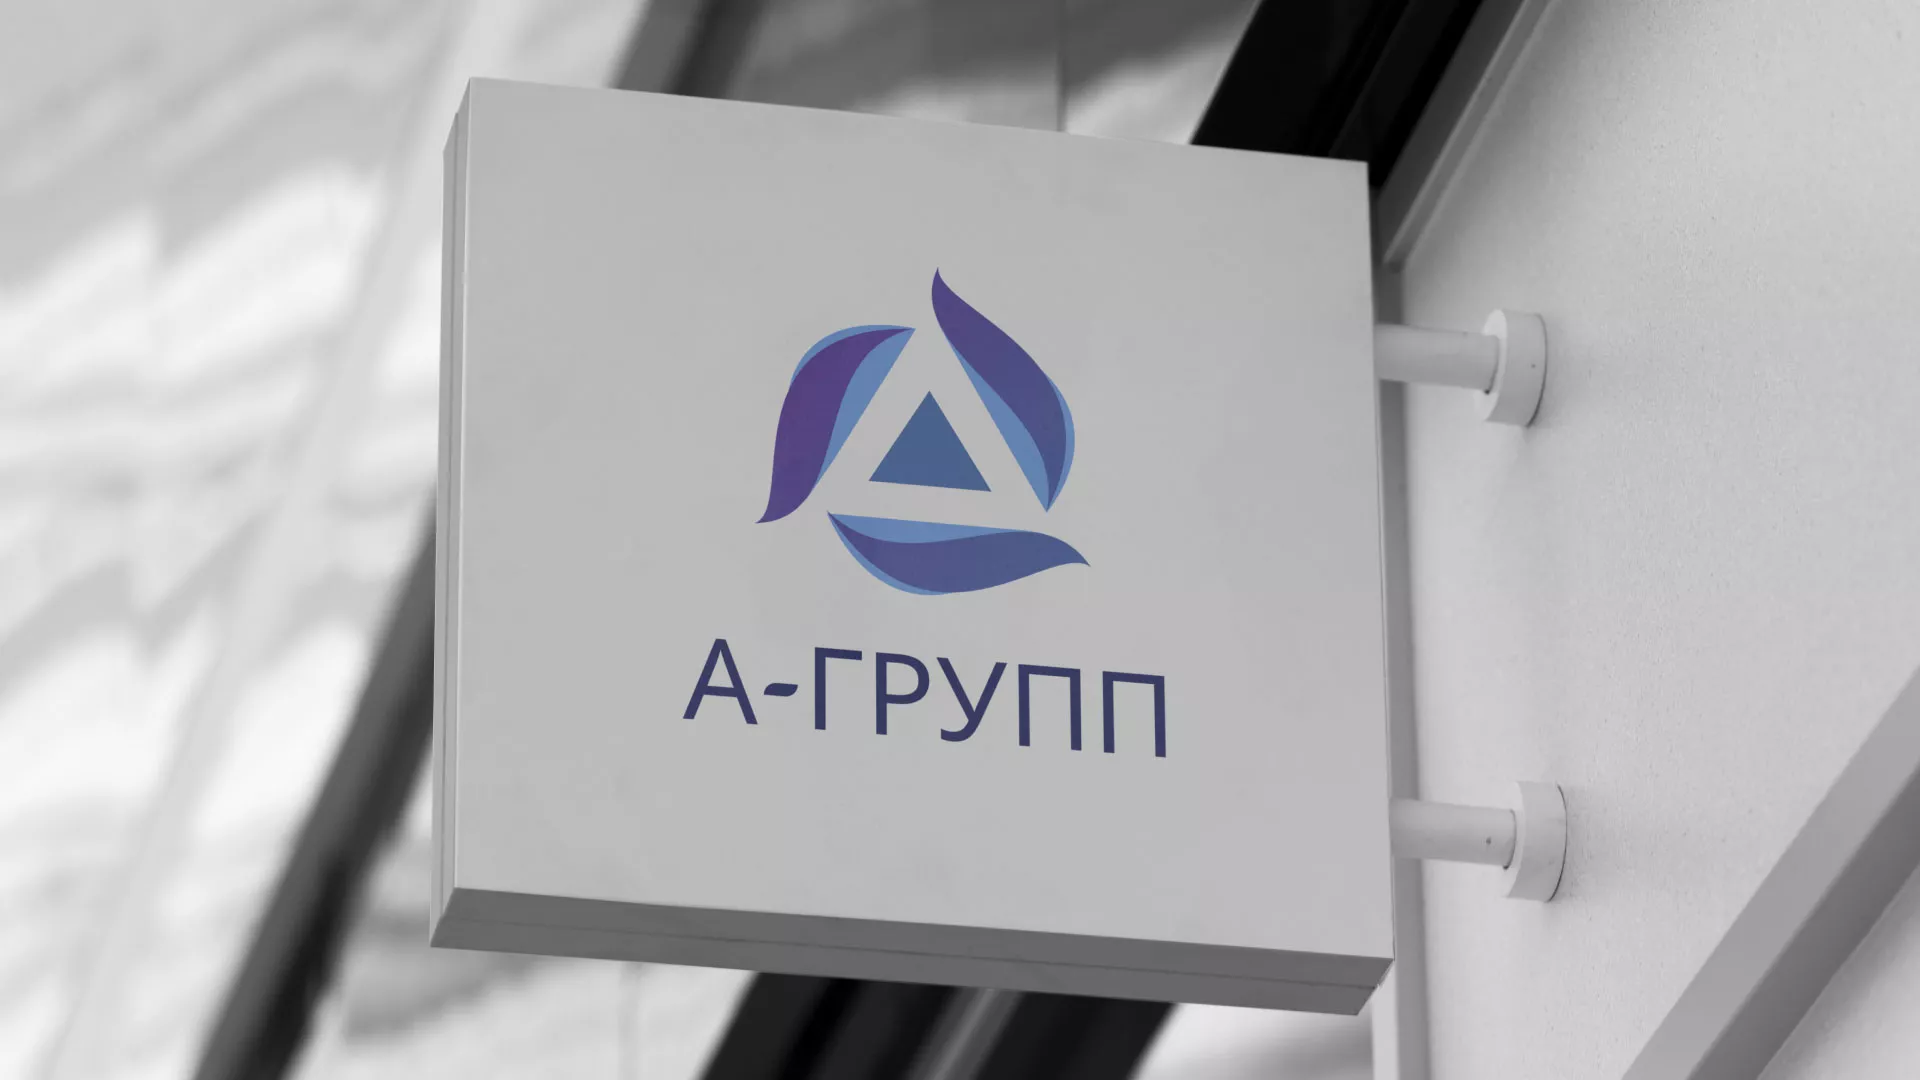 Создание логотипа компании «А-ГРУПП» в Абдулино